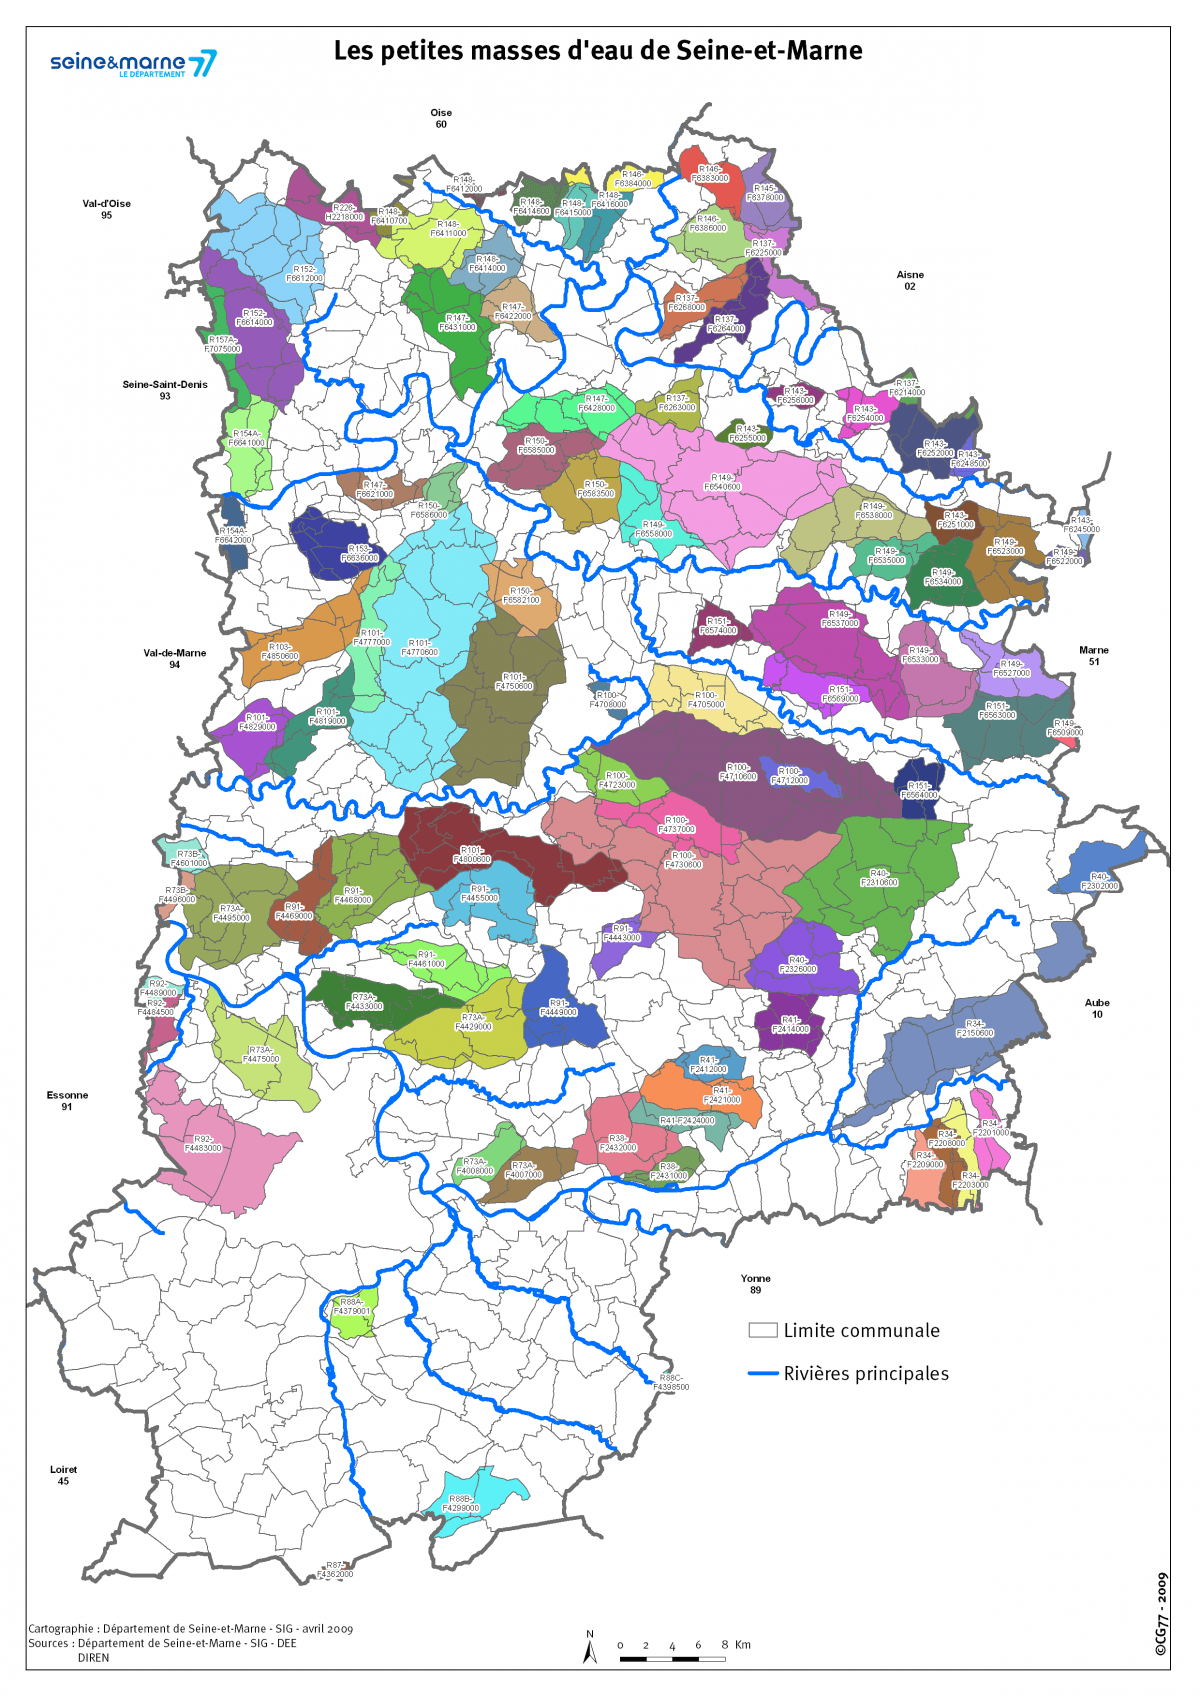 Les petites masses d’eau de Seine-et-Marne